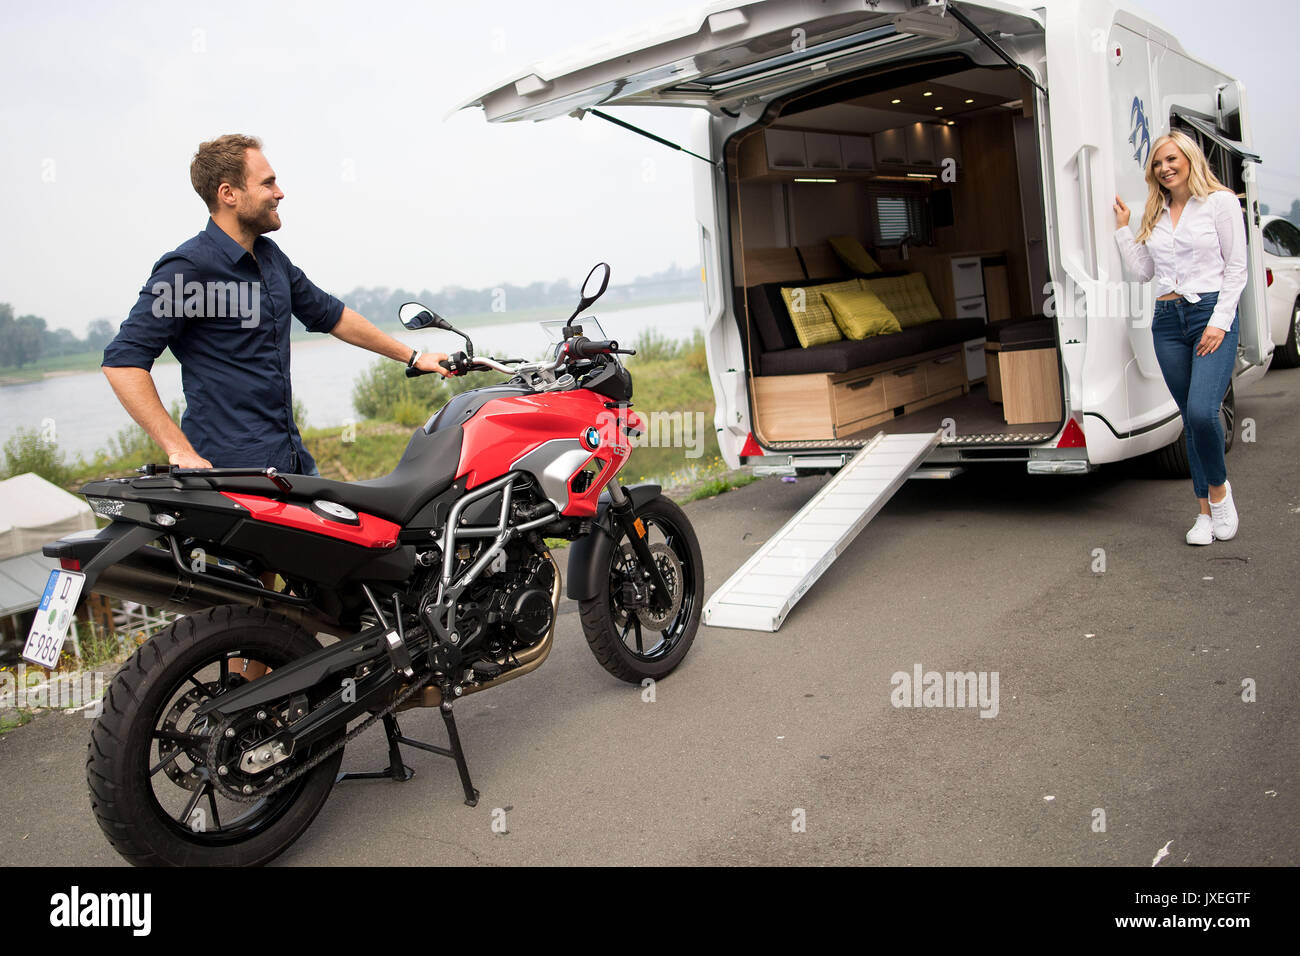 Düsseldorf, Allemagne. Août 16, 2017. Stefan modèle pousse une moto dans un  camping-car Knaus au cours d'une conférence de presse pour le salon Caravan  Salon de Düsseldorf, Allemagne, 16 août 2017. Le